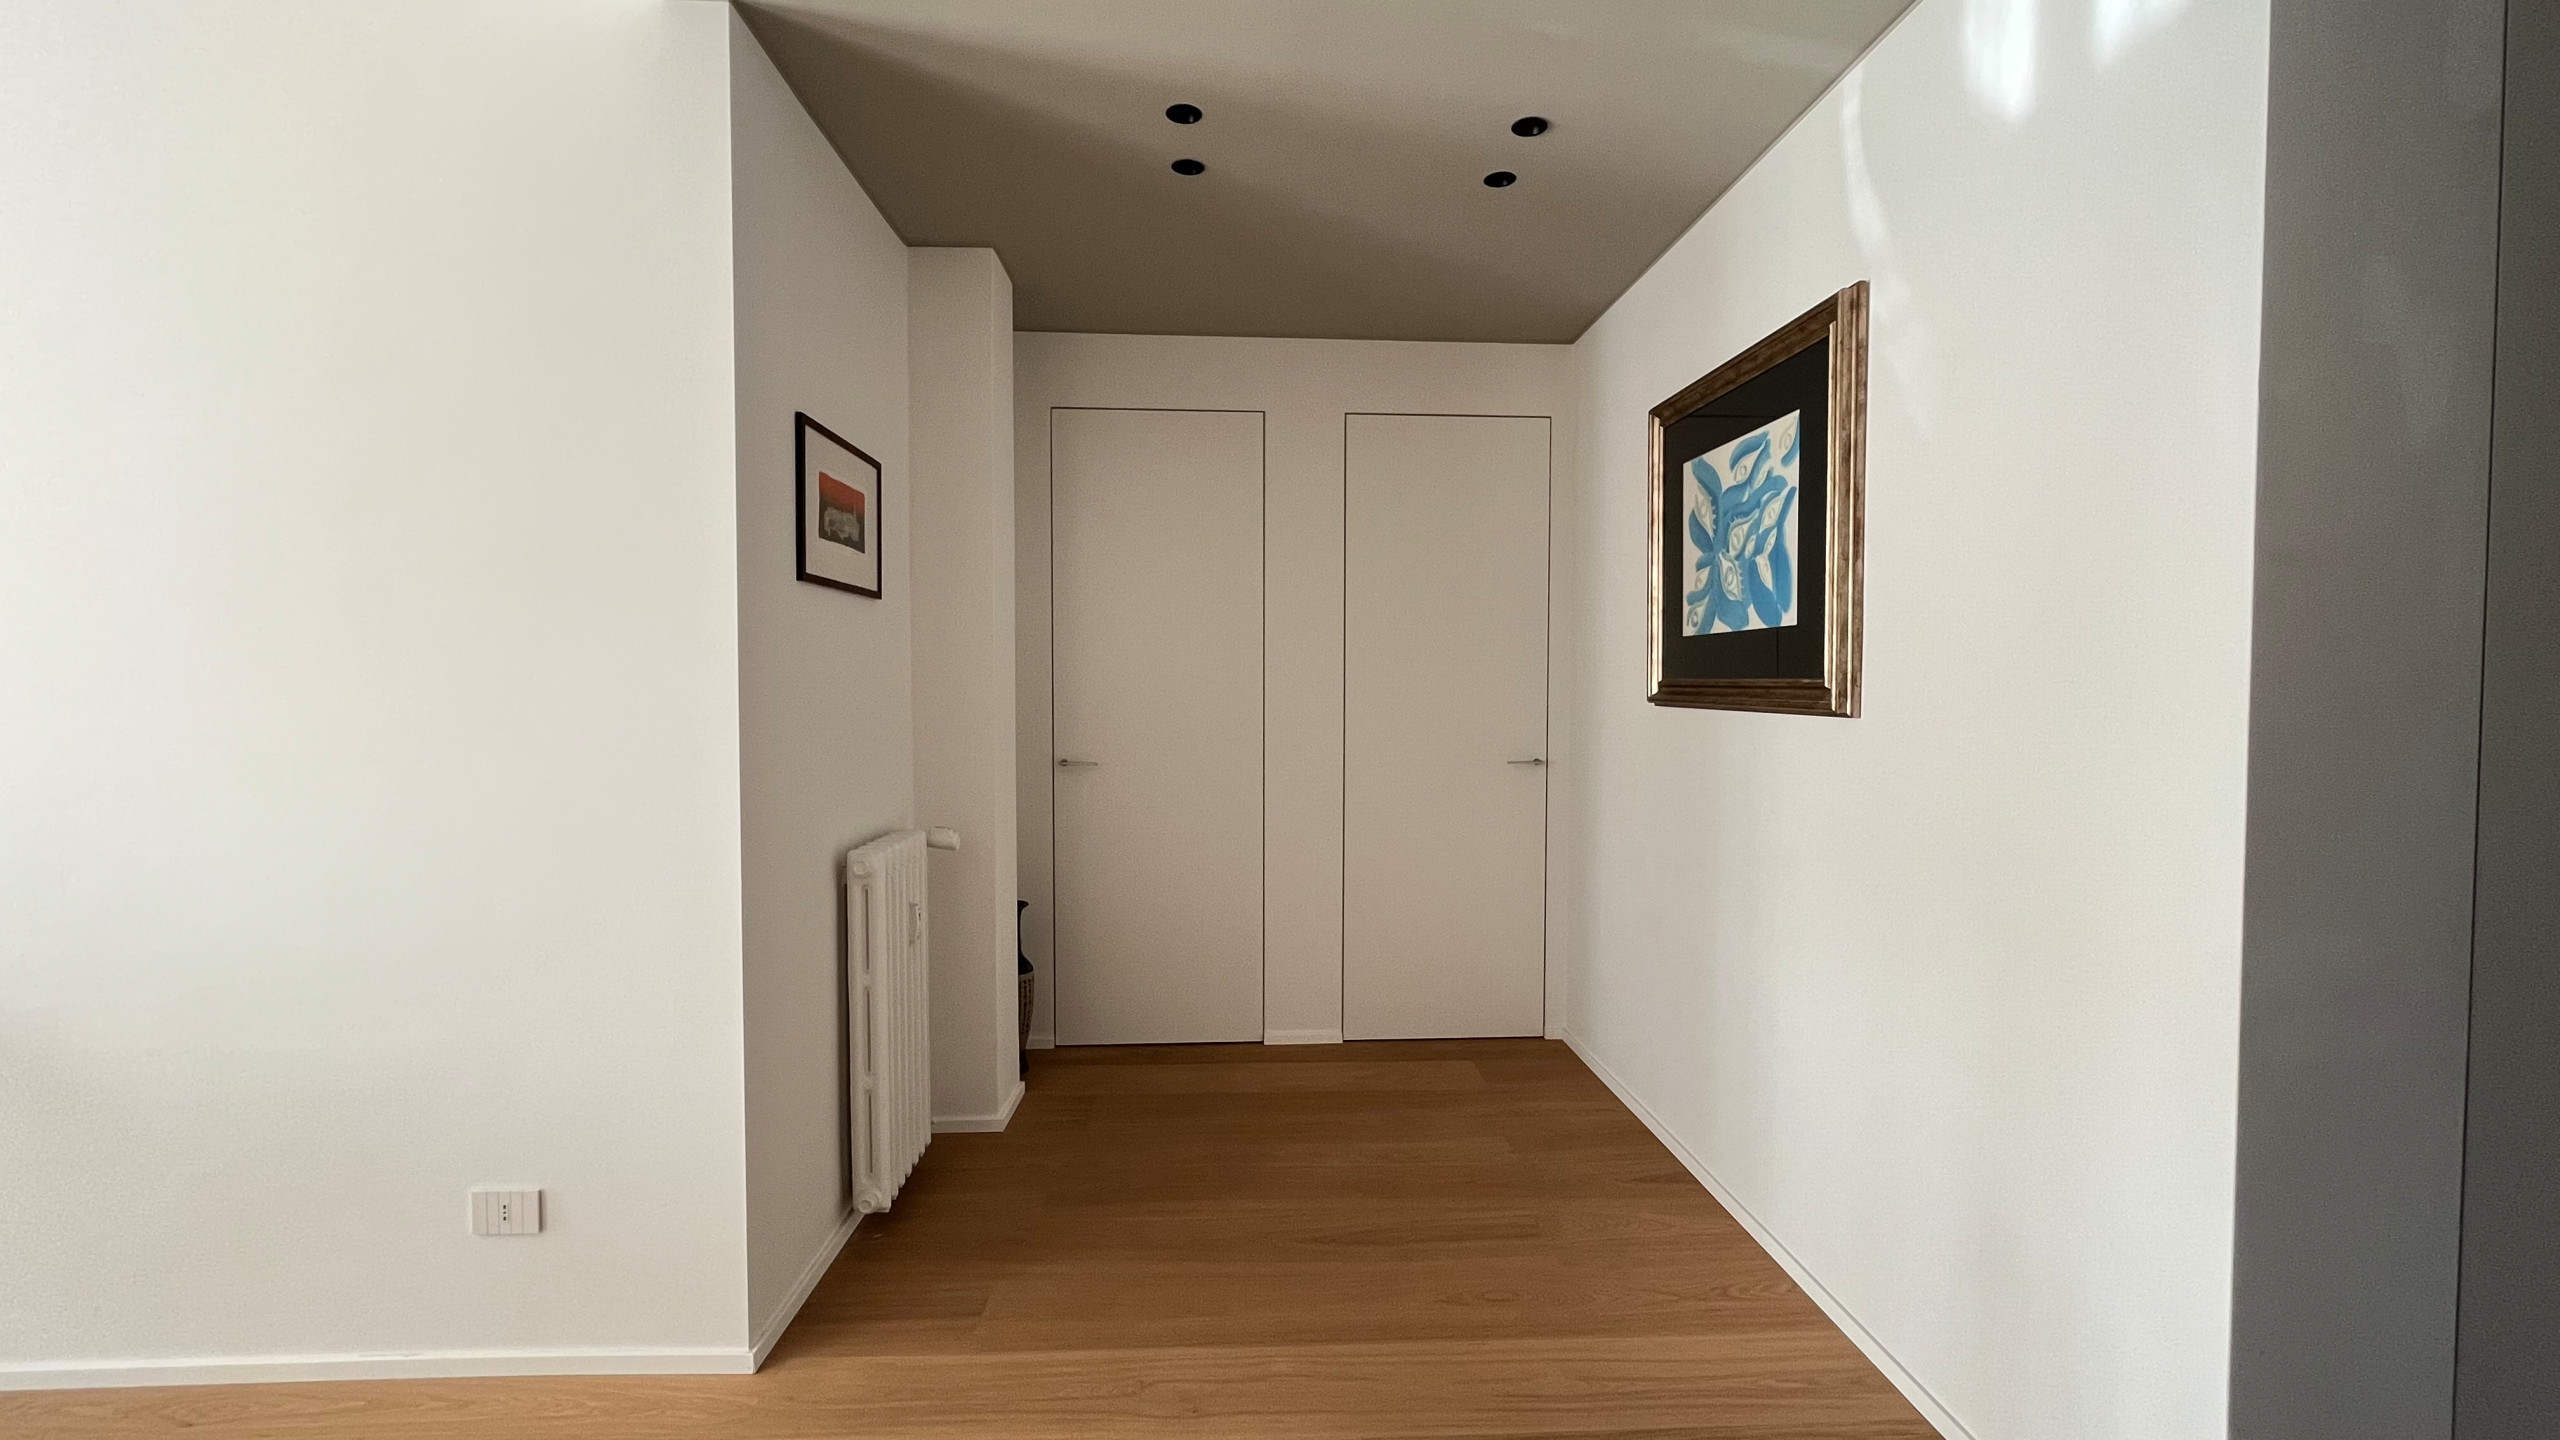 Ristrutturazione Interni appartamento | Minimal Design | 180 MQ